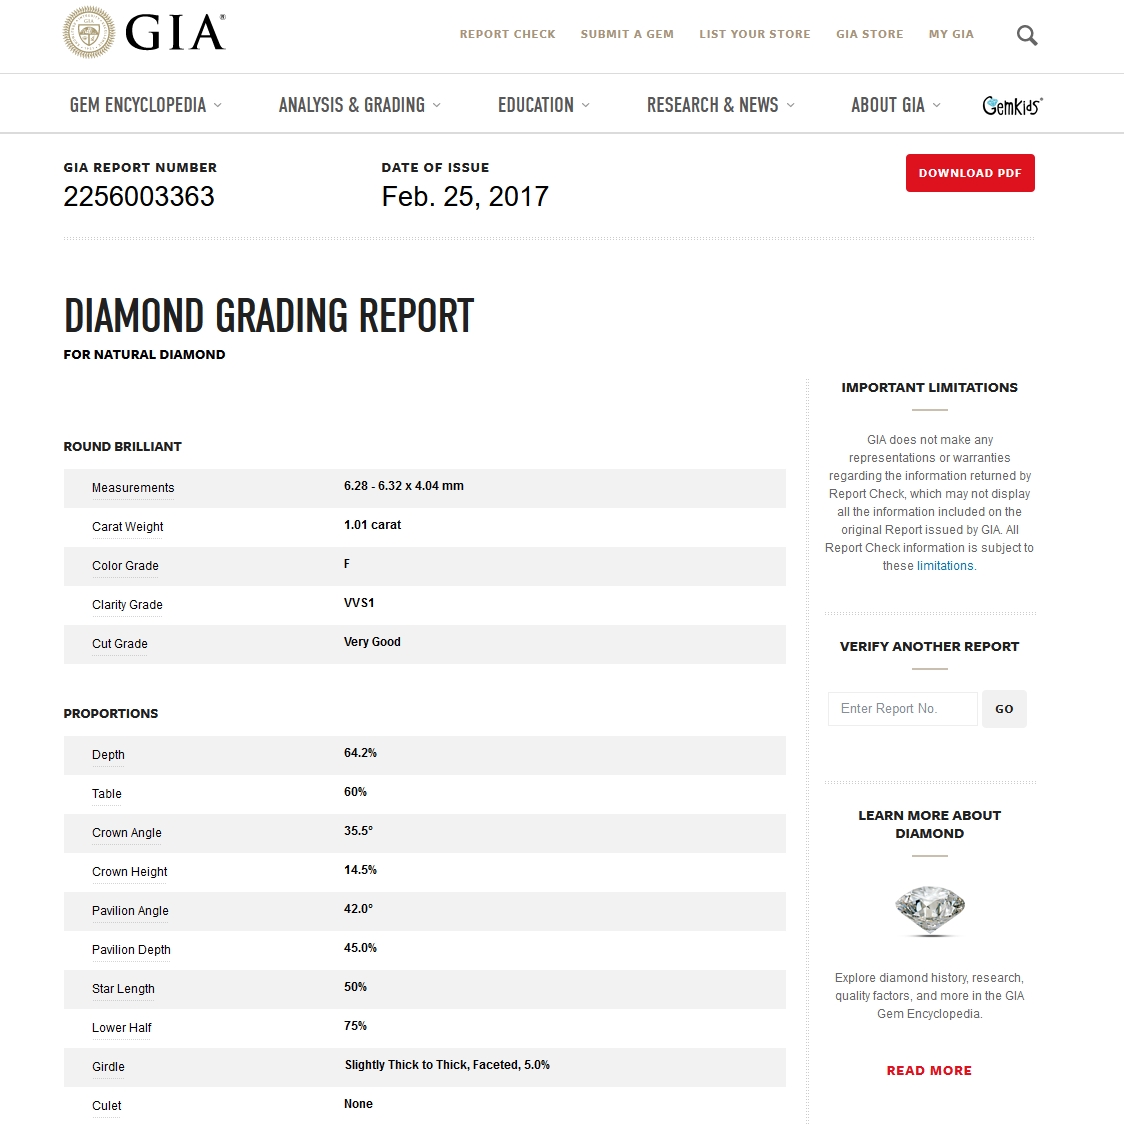 Diamante Naturale Certificato GIA Kt. 1,01 Colore F Purezza VVS1